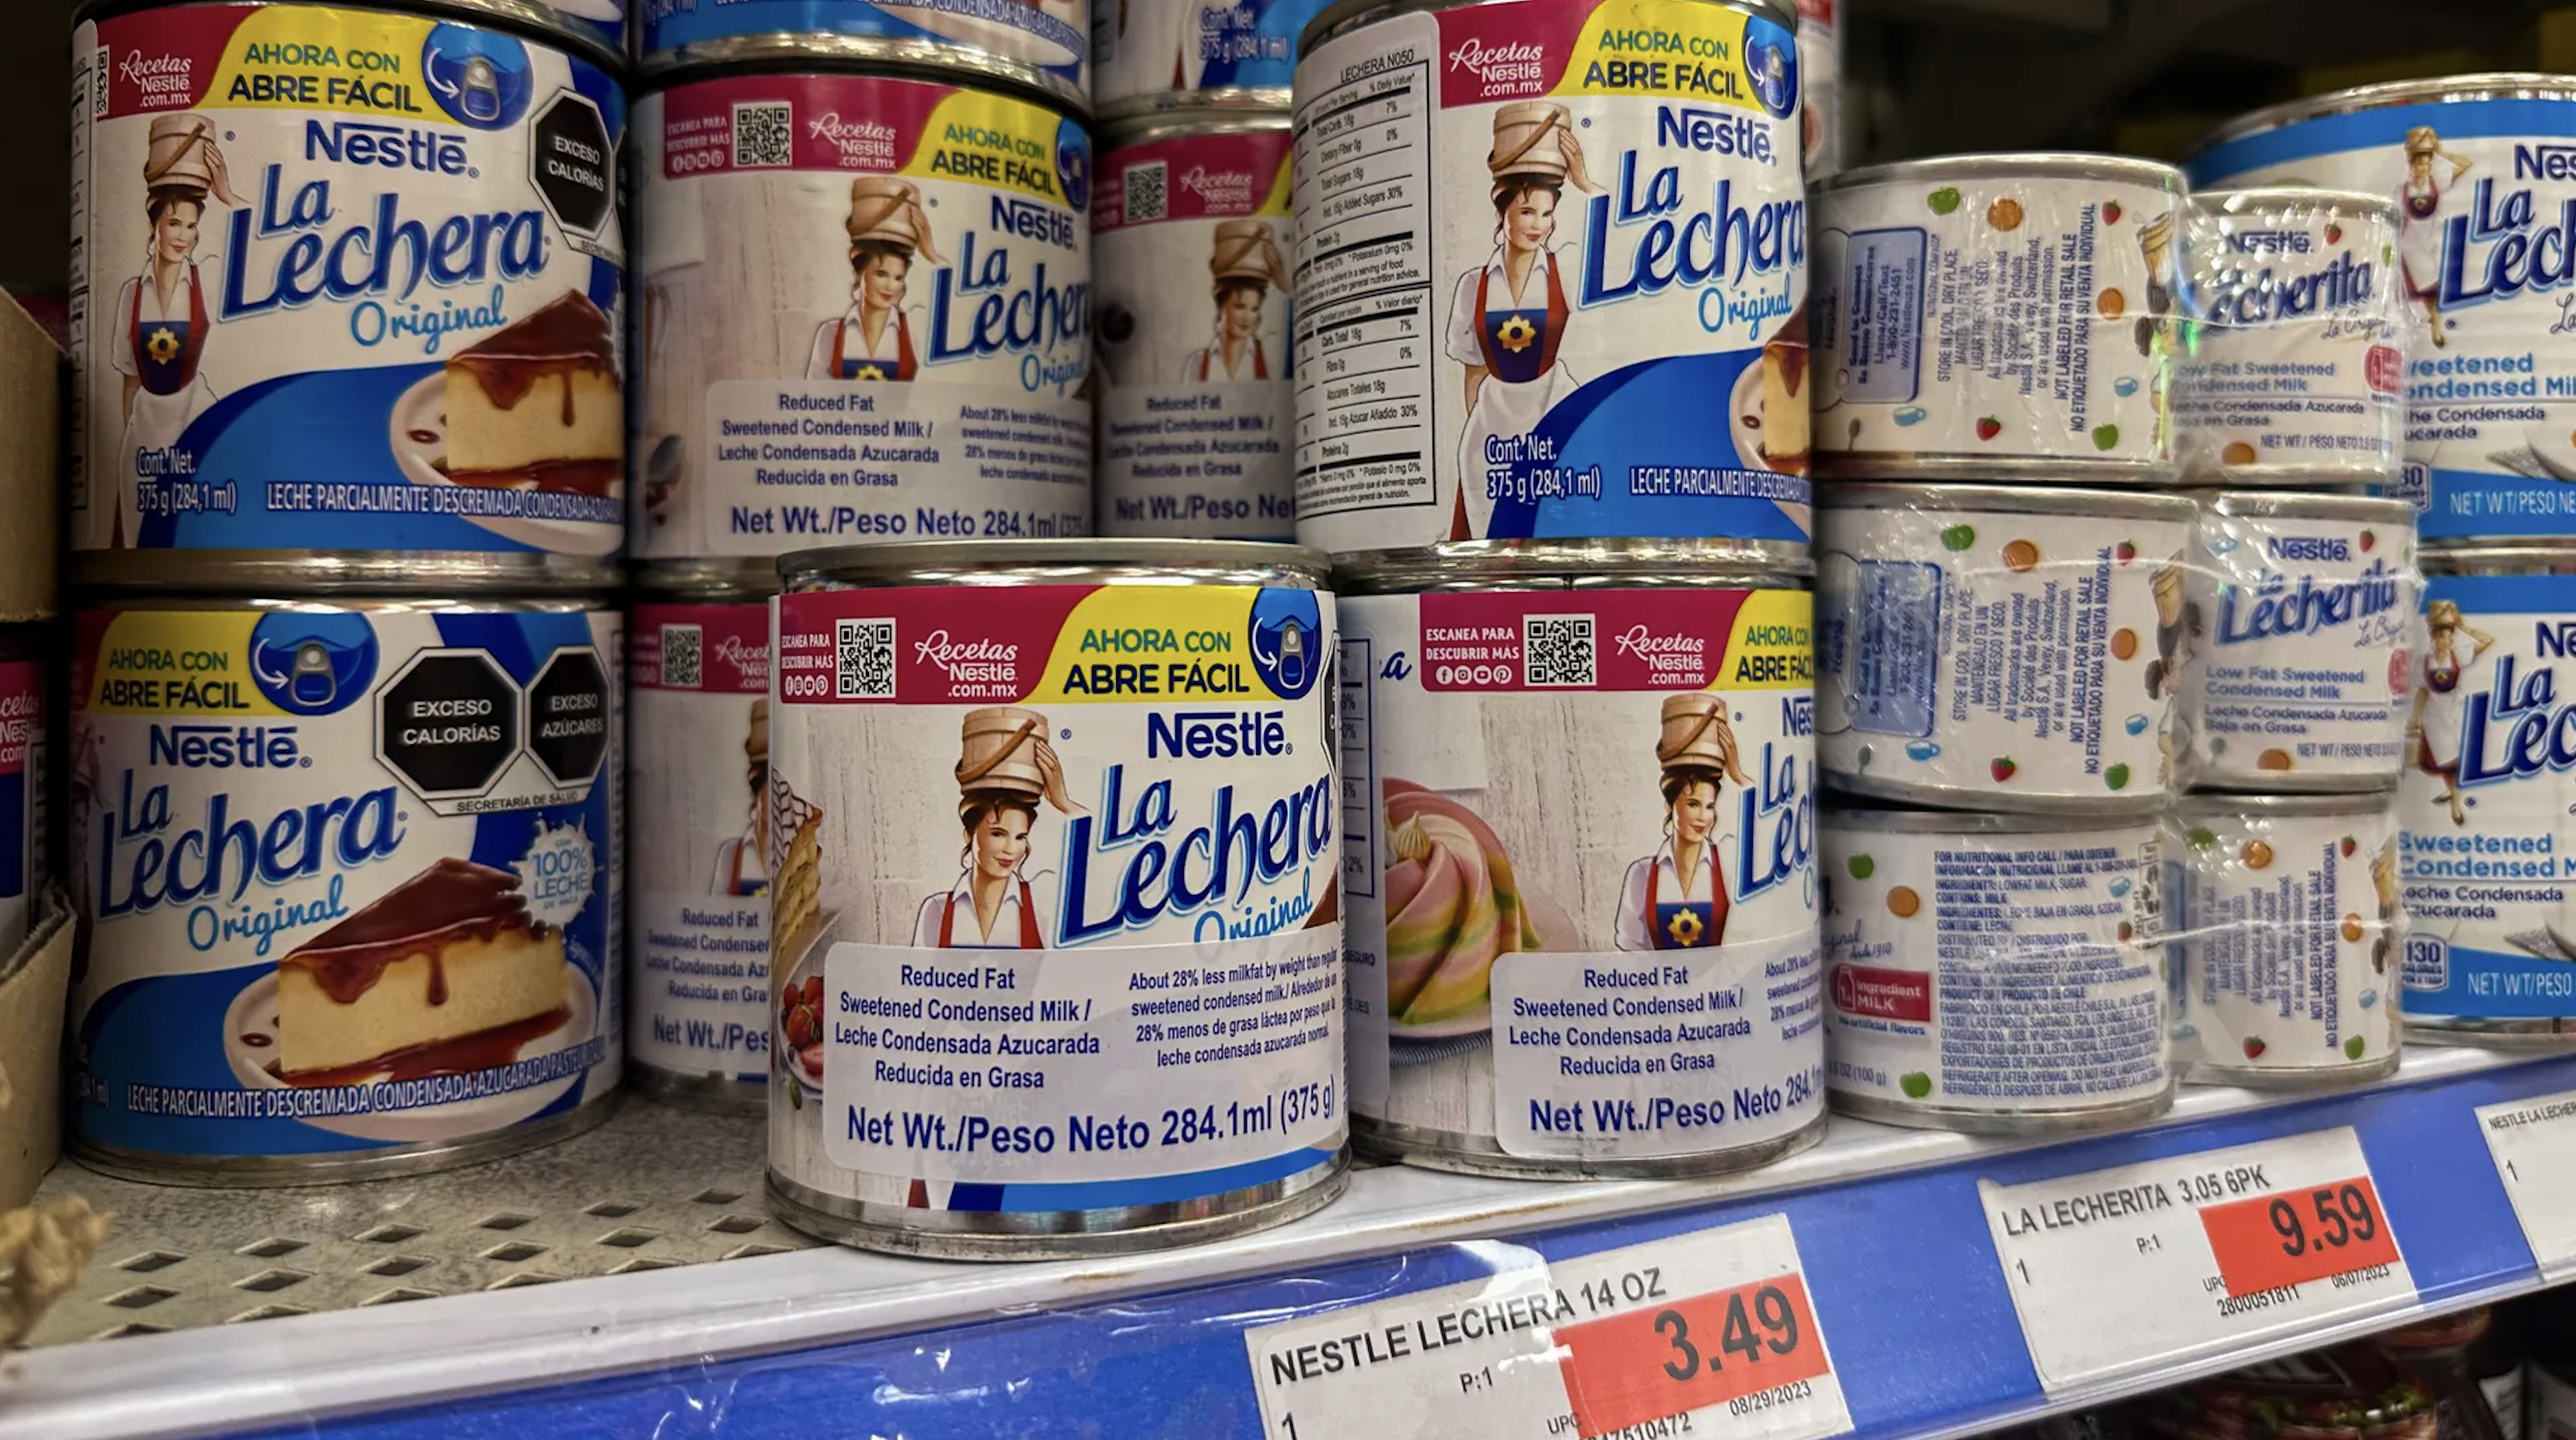 La Lachera, un producto de Nestlé fabricado en México, se encuentra en un estante de una tienda de comestibles latina en Albuquerque, Nuevo México.